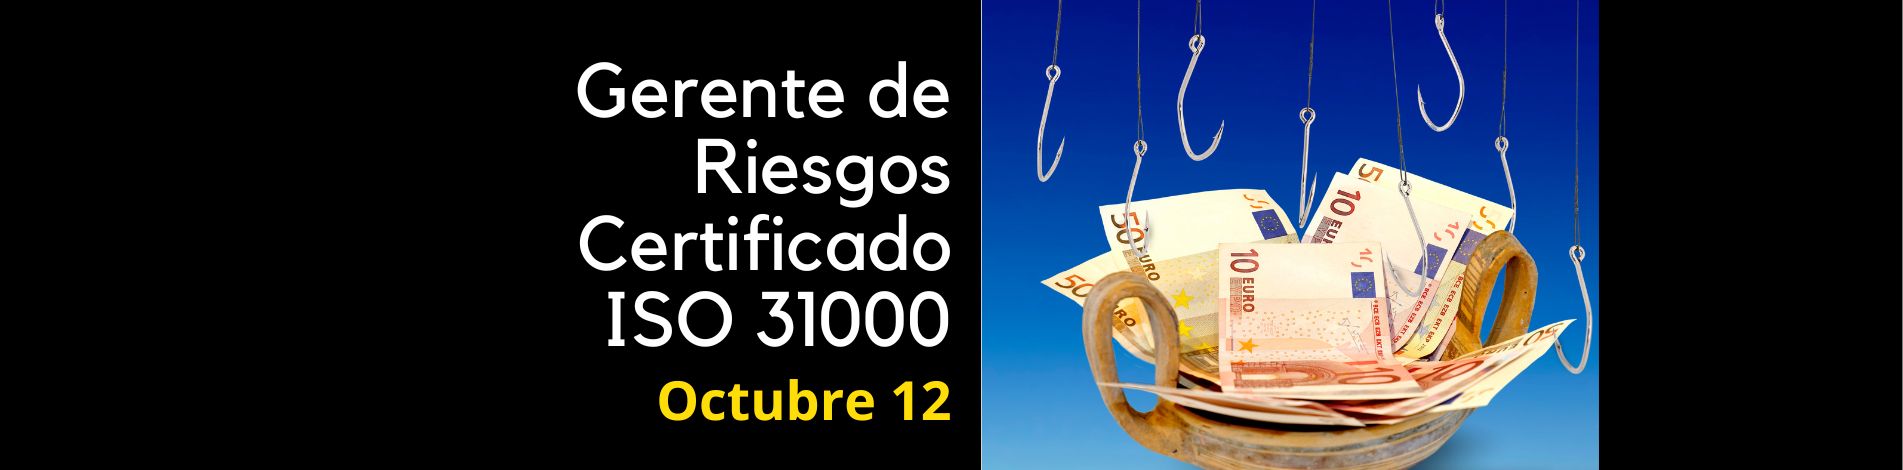 Gerente de Riesgos ISO 31000 Certificado PECB